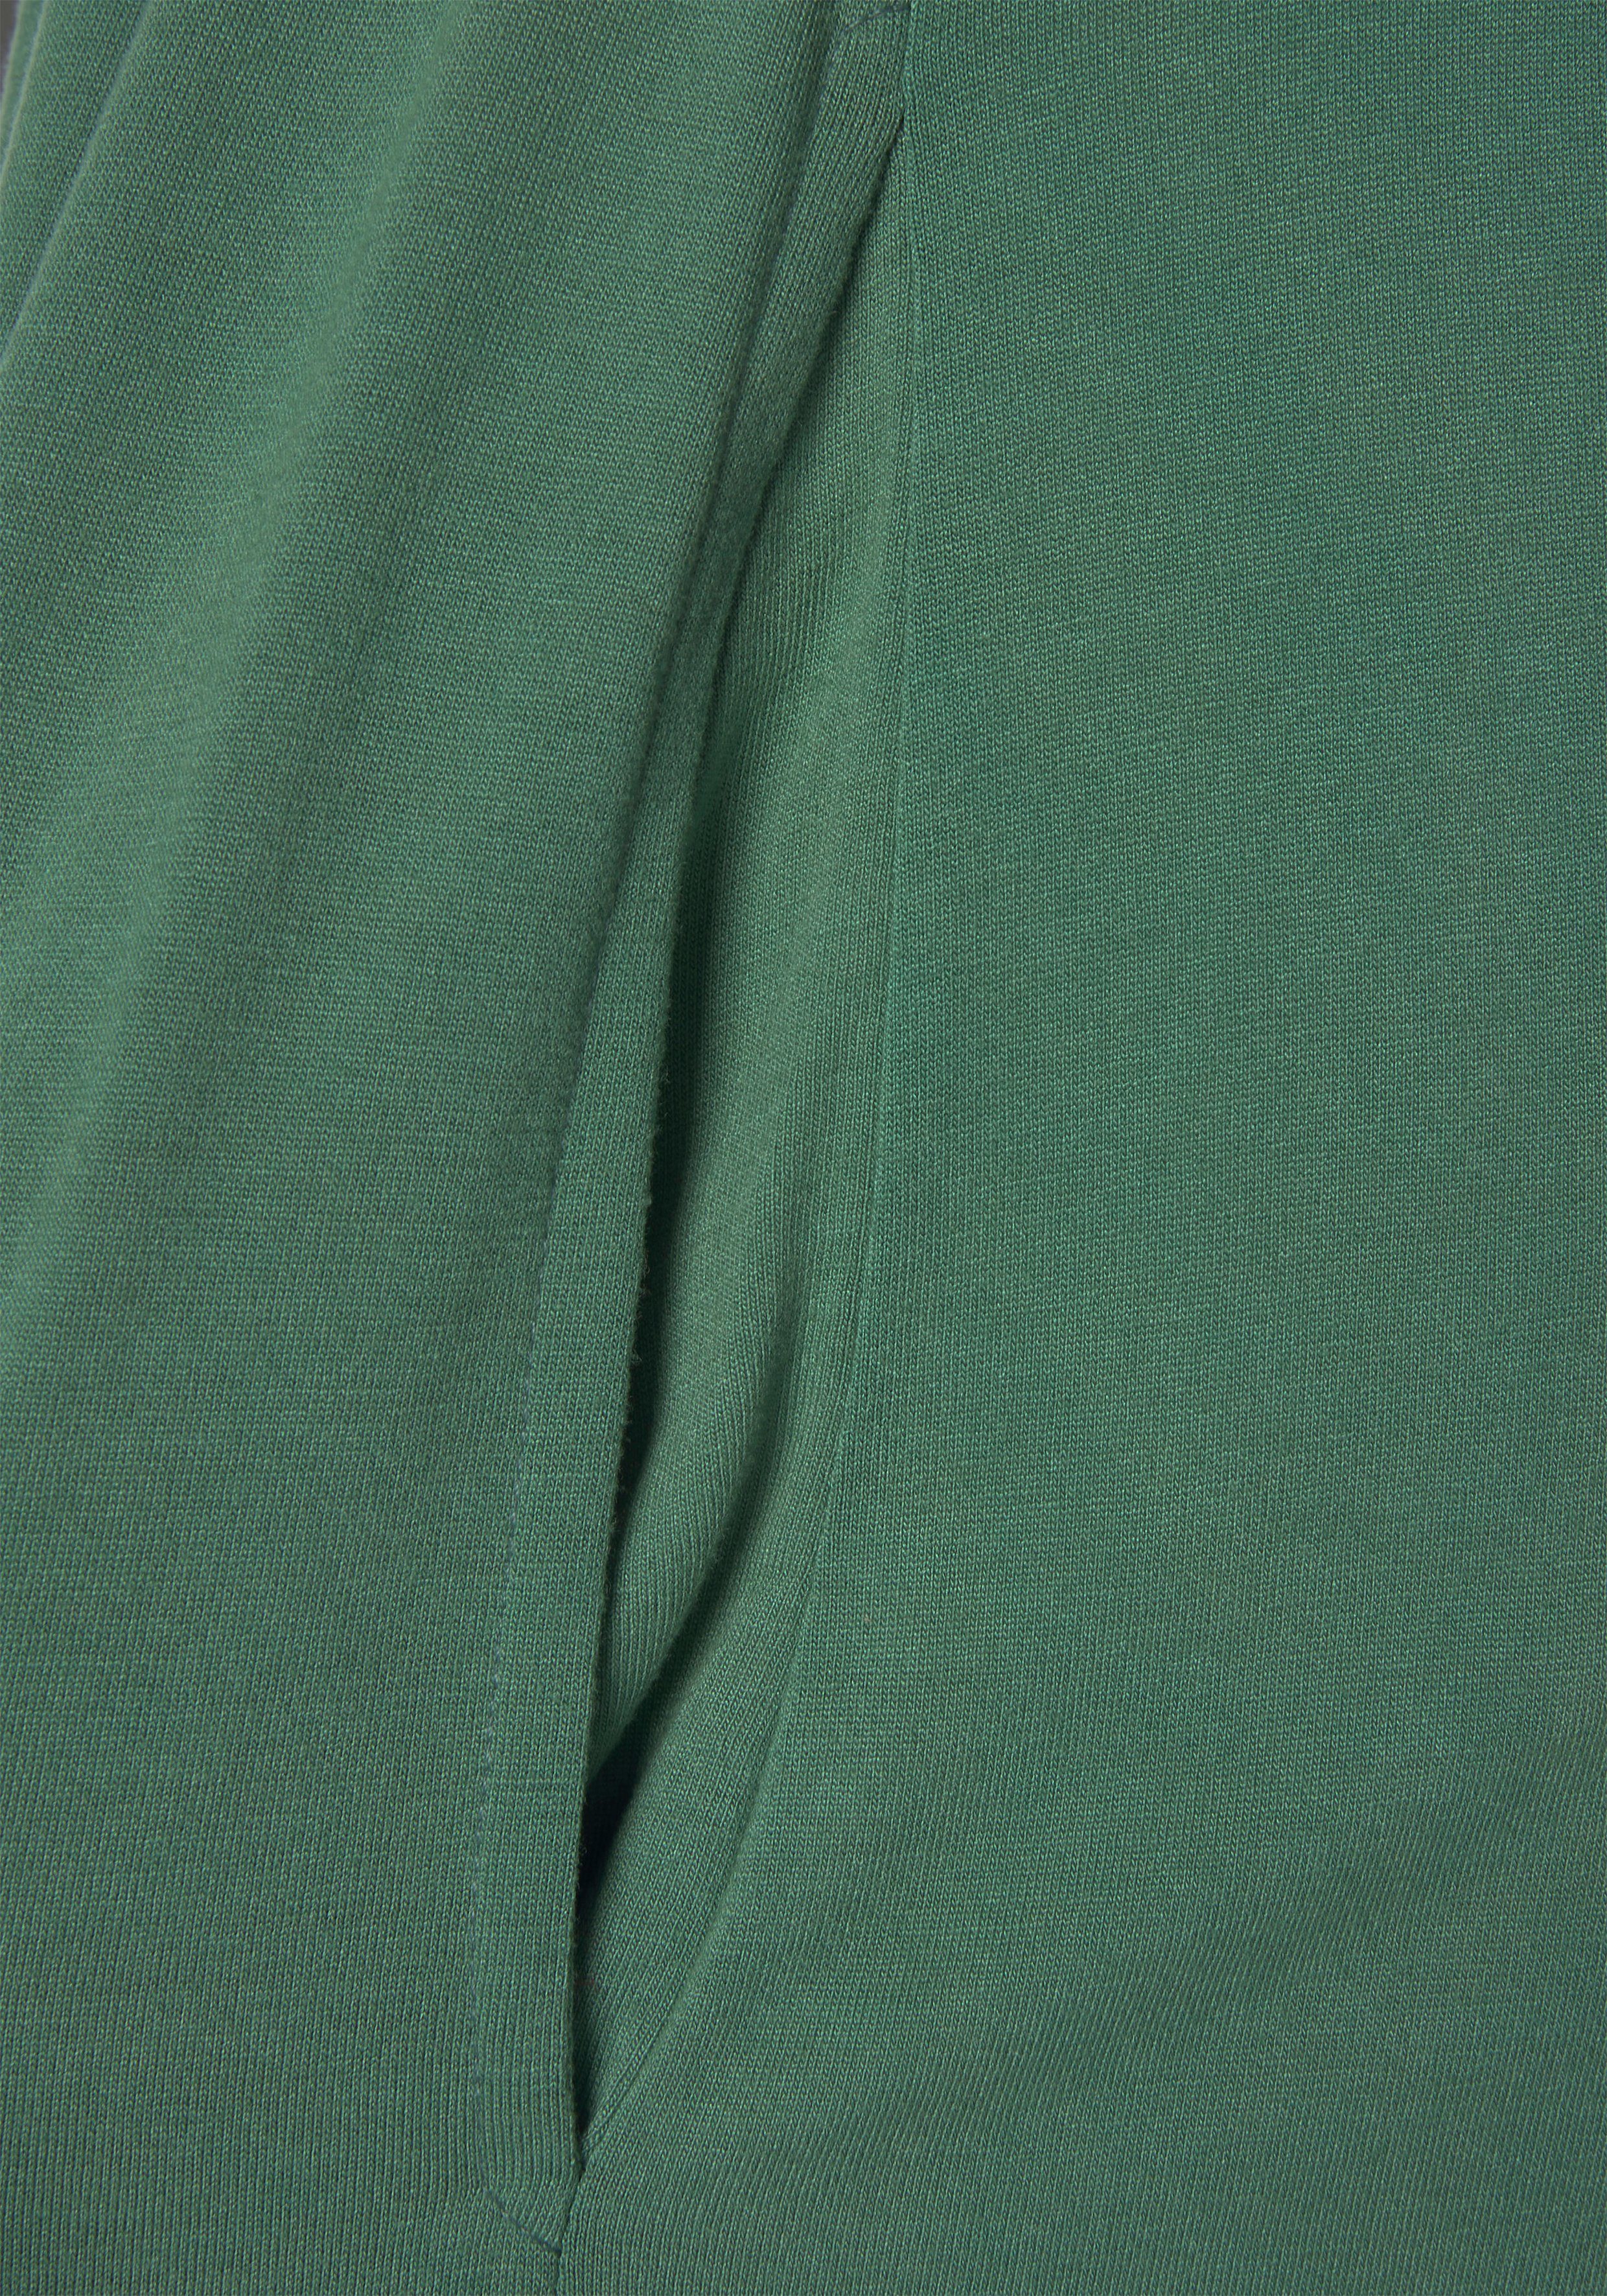 Beachtime Jerseykleid dunkelgrün